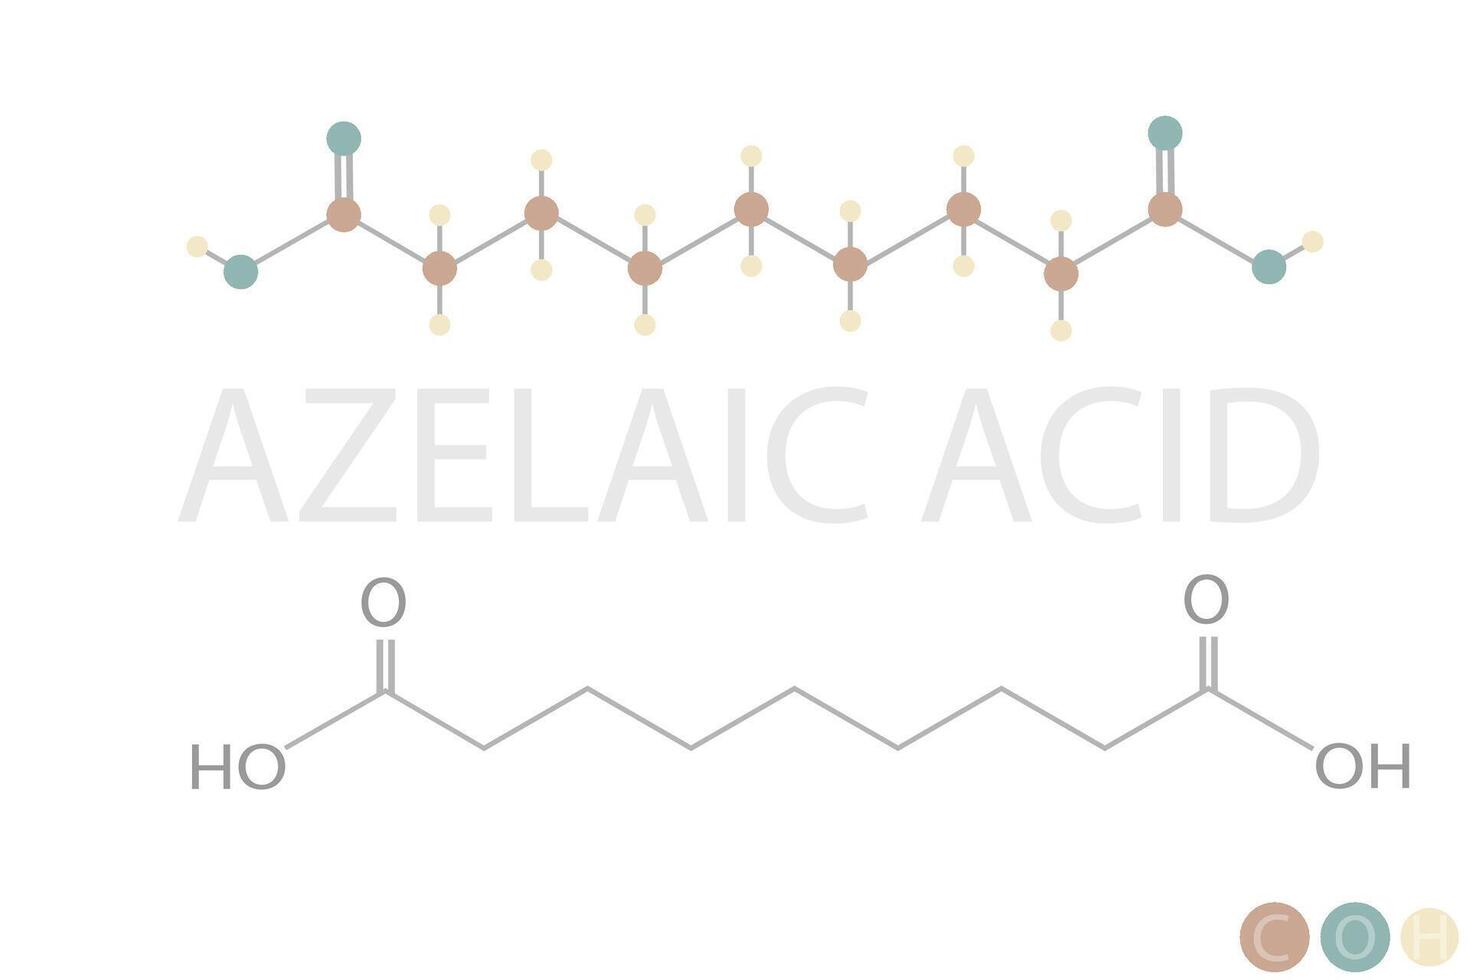 azelaico ácido molecular esquelético químico Fórmula vetor